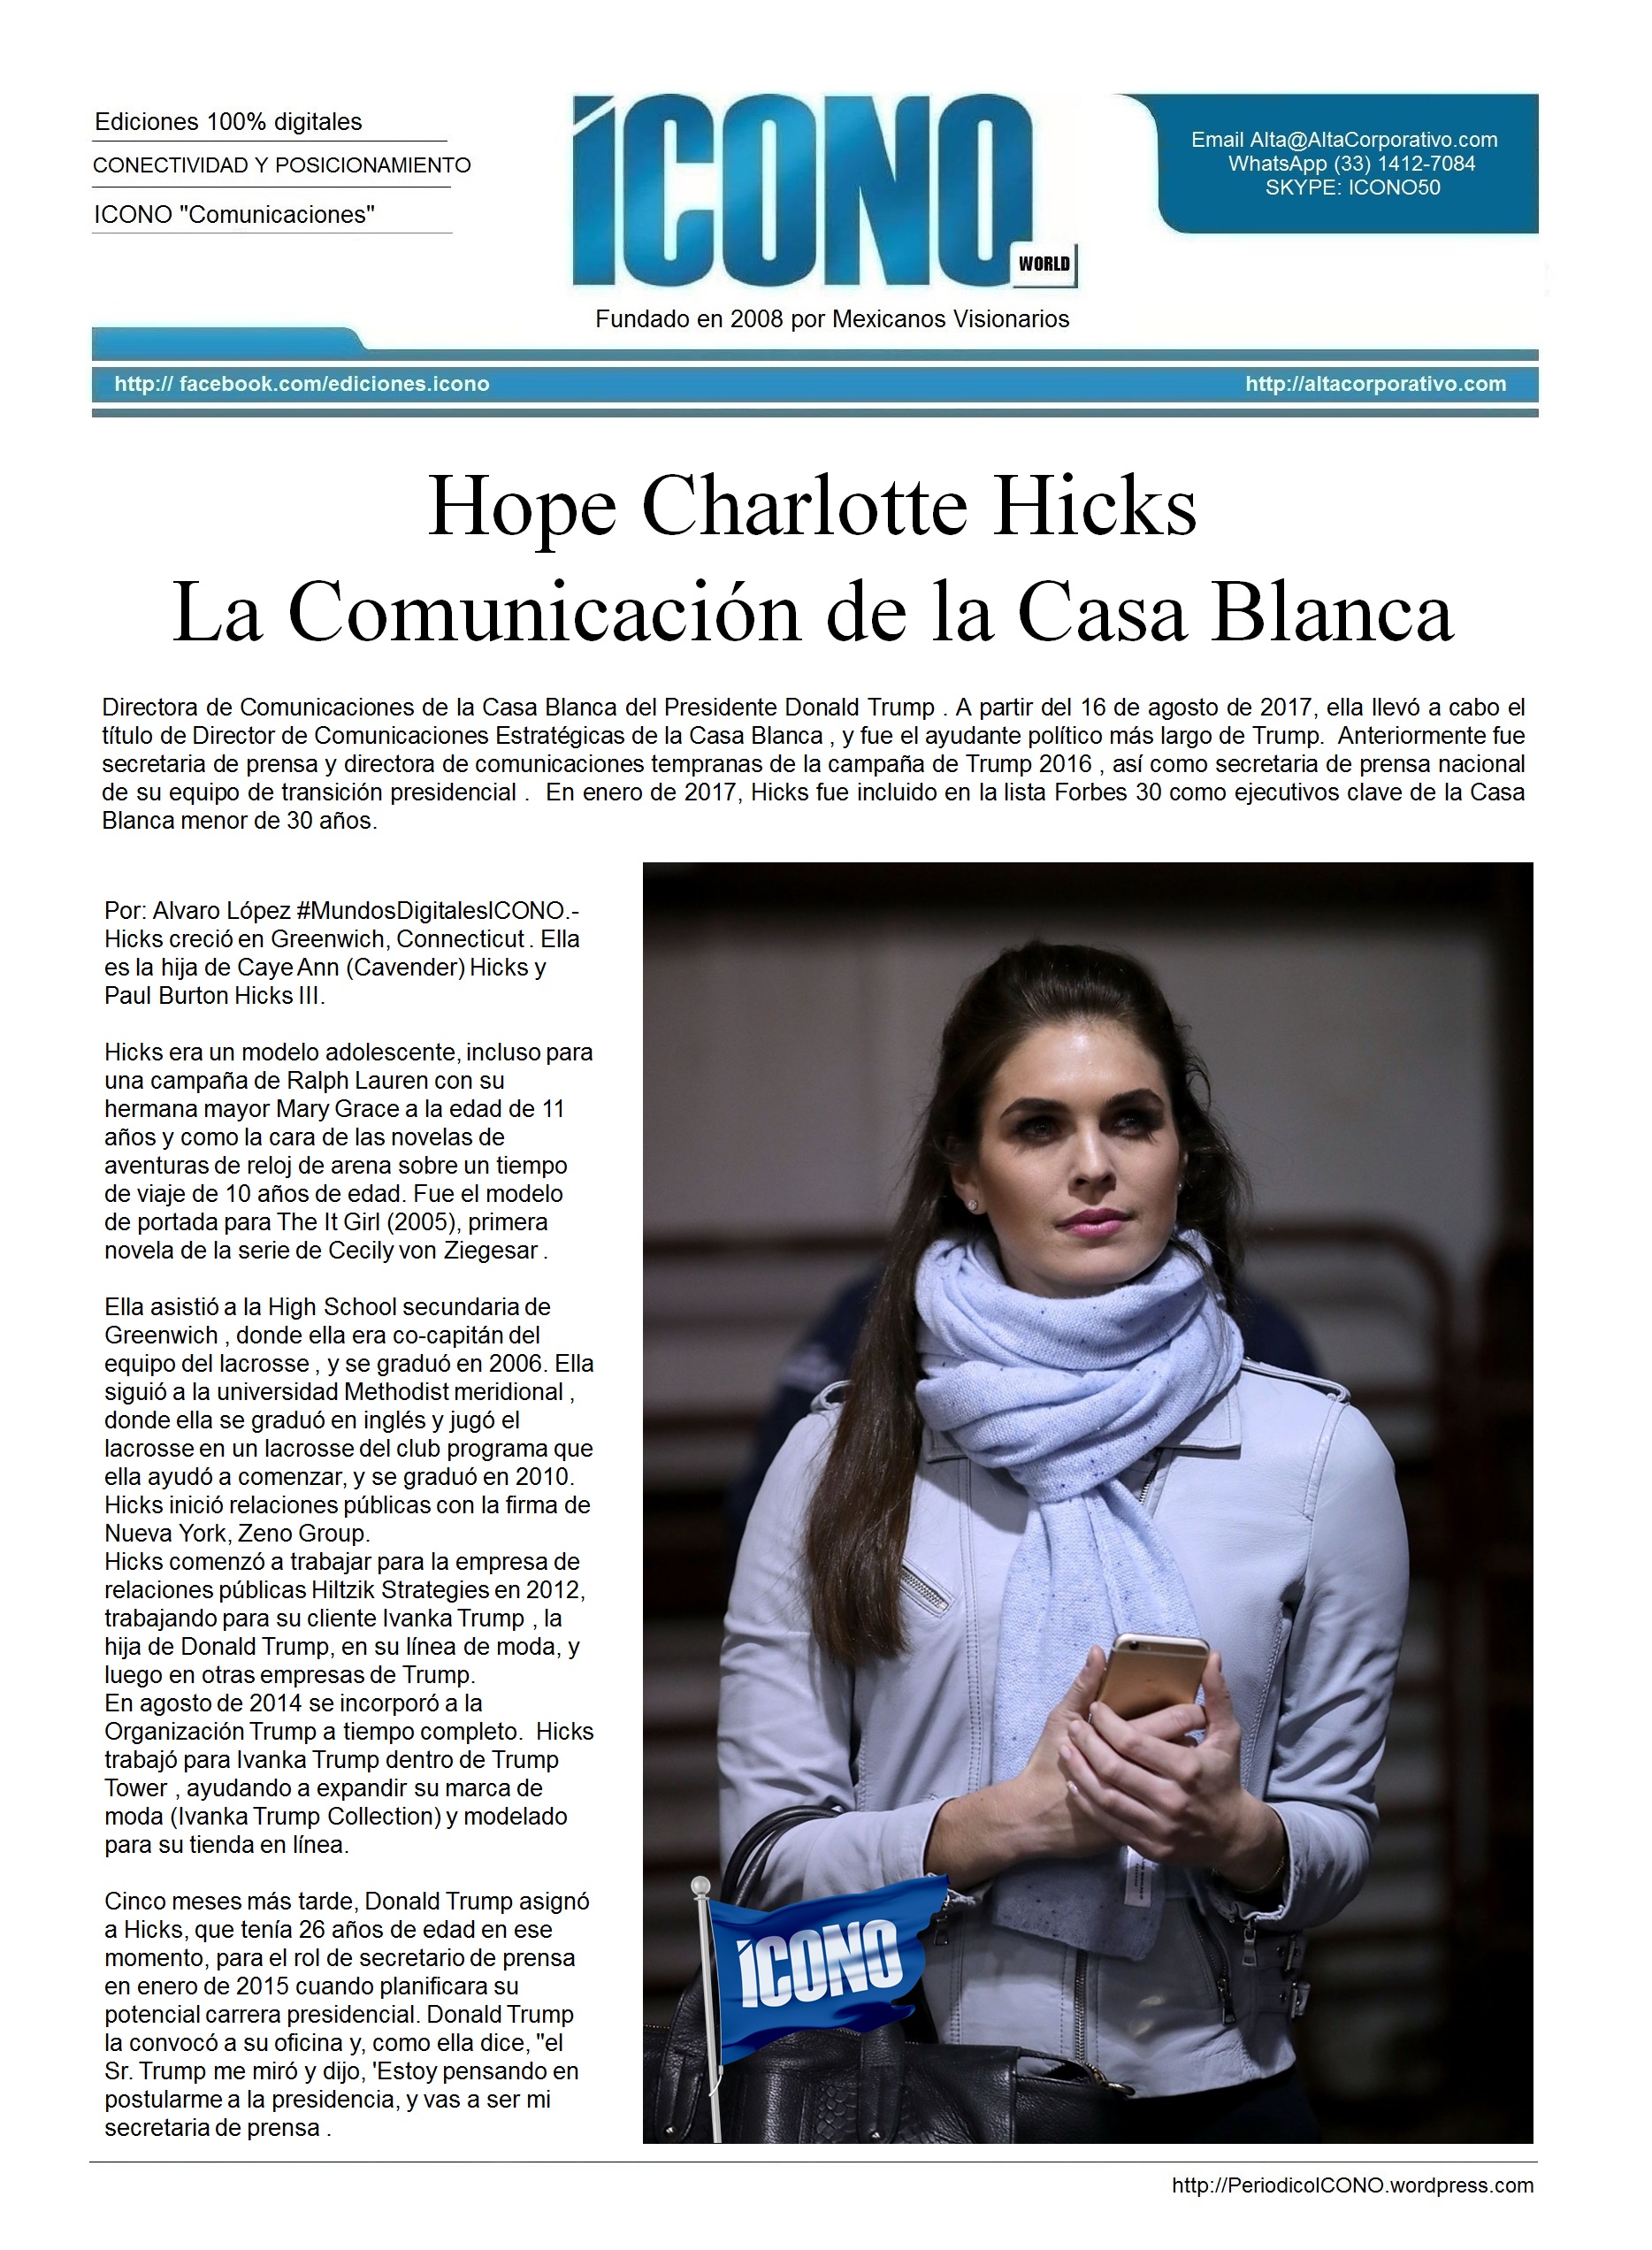 Hope Charlotte Hicks La Comunicación de la Casa Blanca | ICONO 2017